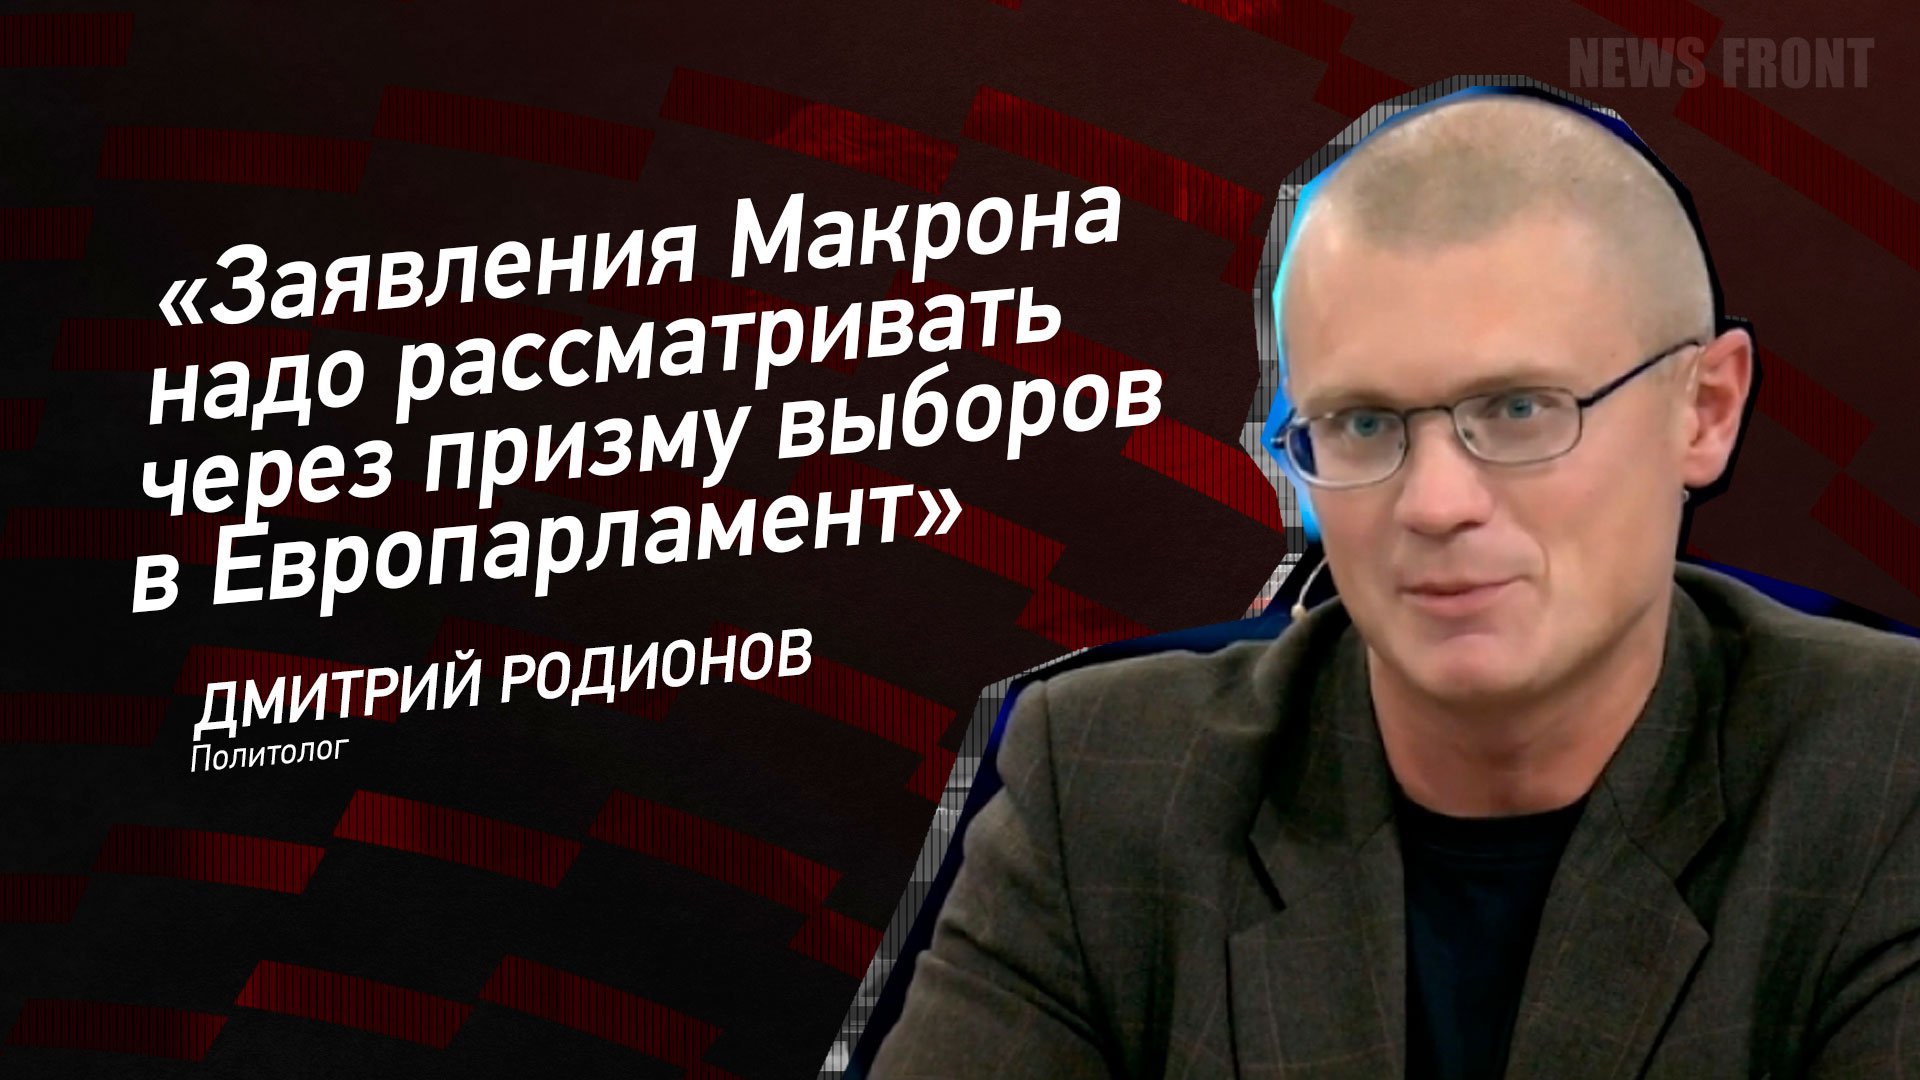 "Заявления Макрона надо рассматривать через призму выборов в Европарламент" - Дмитрий Родионов